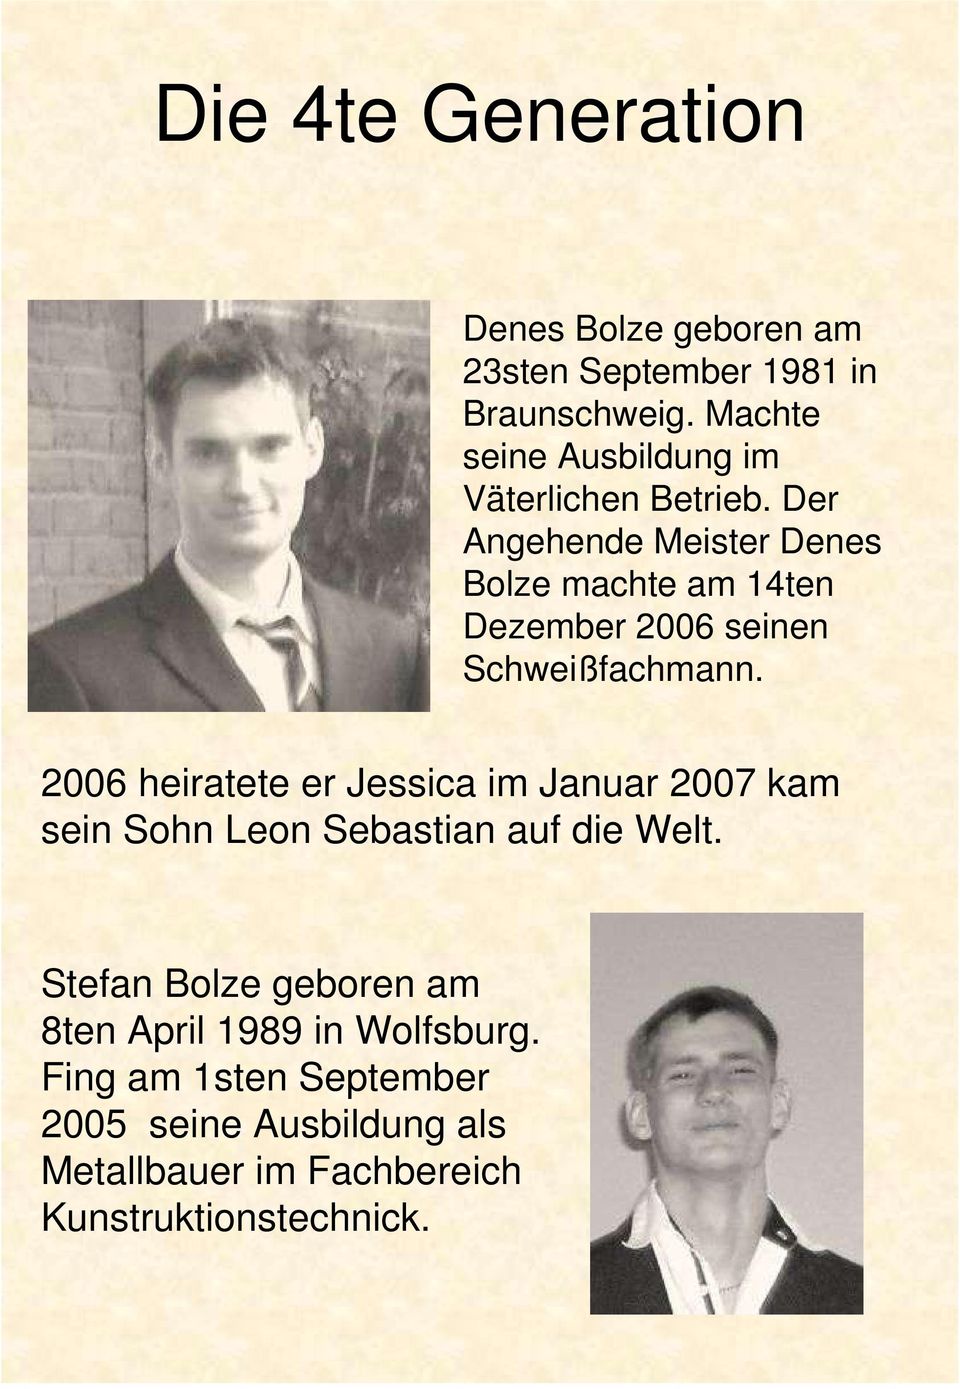 Der Angehende Meister Denes Bolze machte am 14ten Dezember 2006 seinen Schweißfachmann.